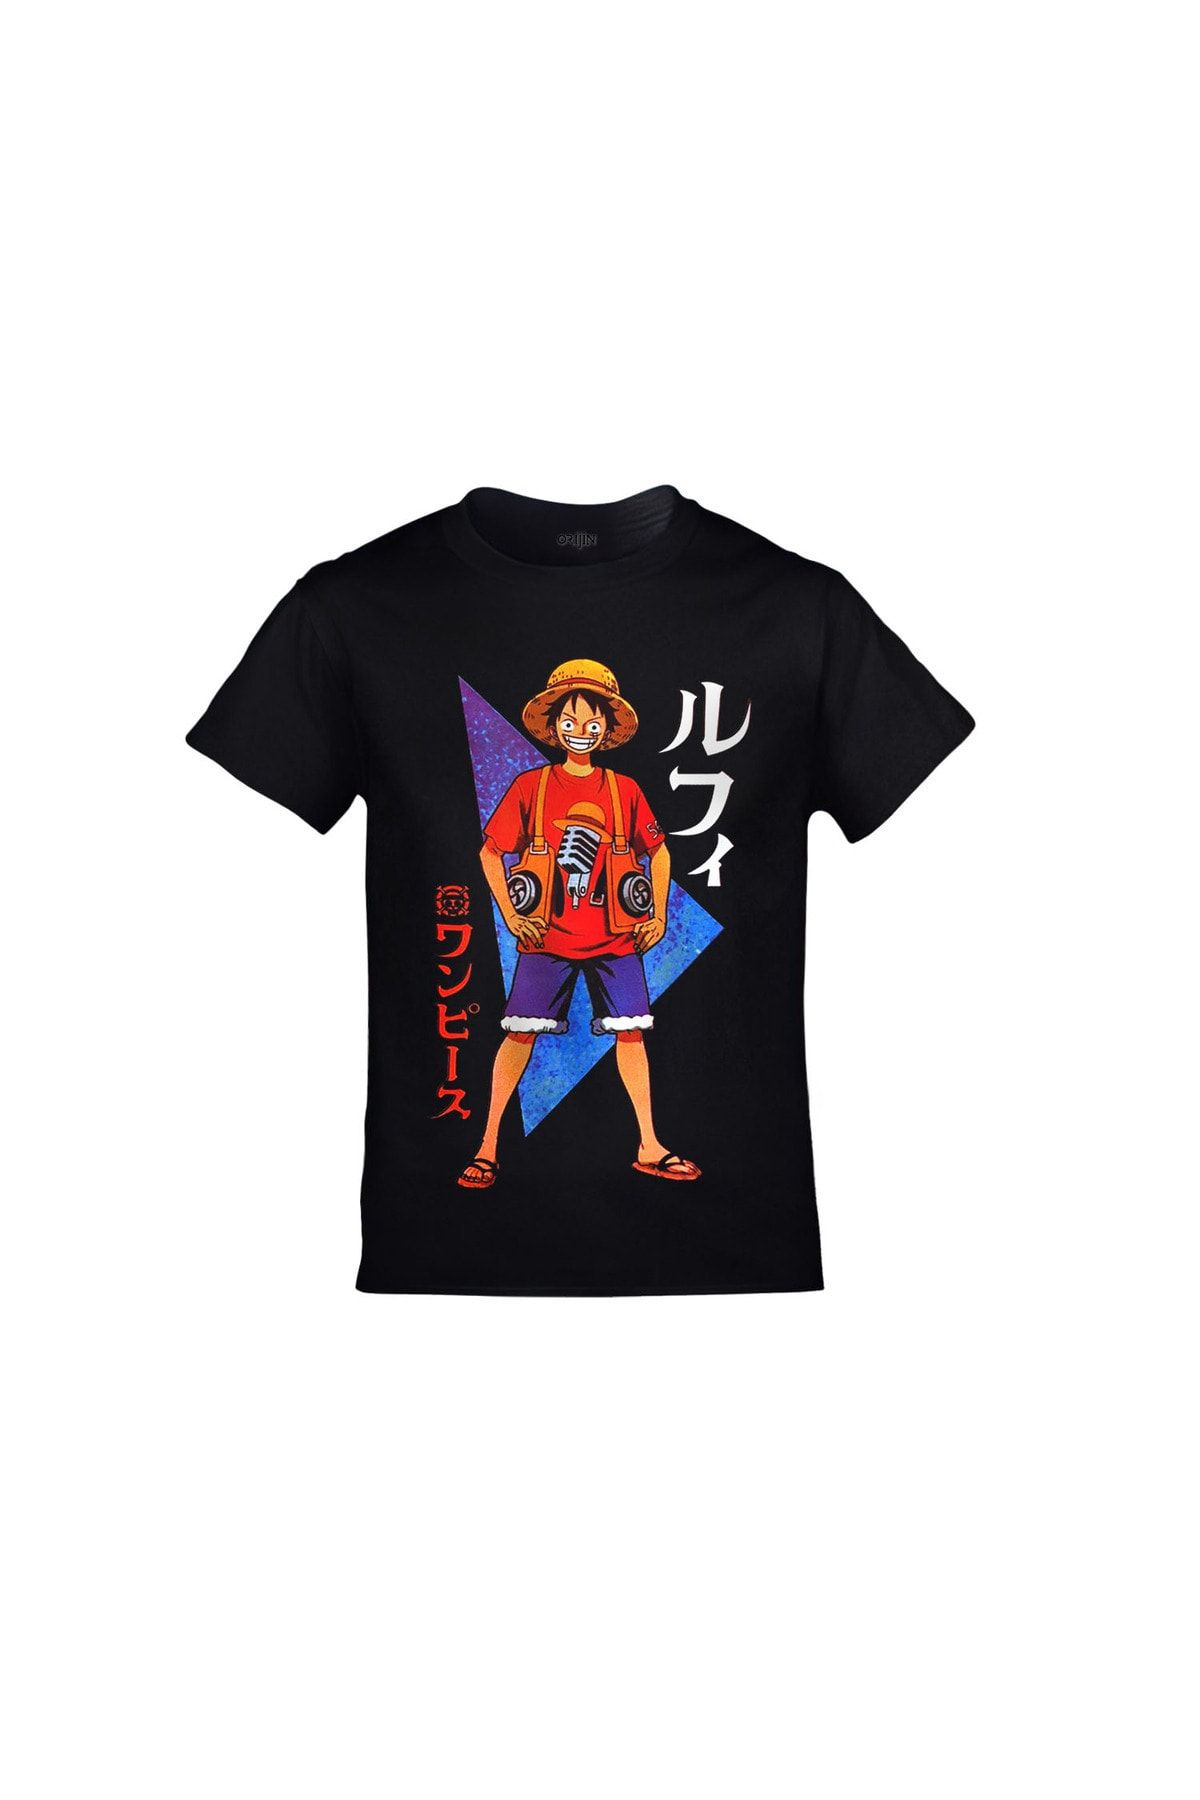 Orijin Tekstil One Piece Monkey D. Luffy Baskılı Siyah Çocuk Tshirt